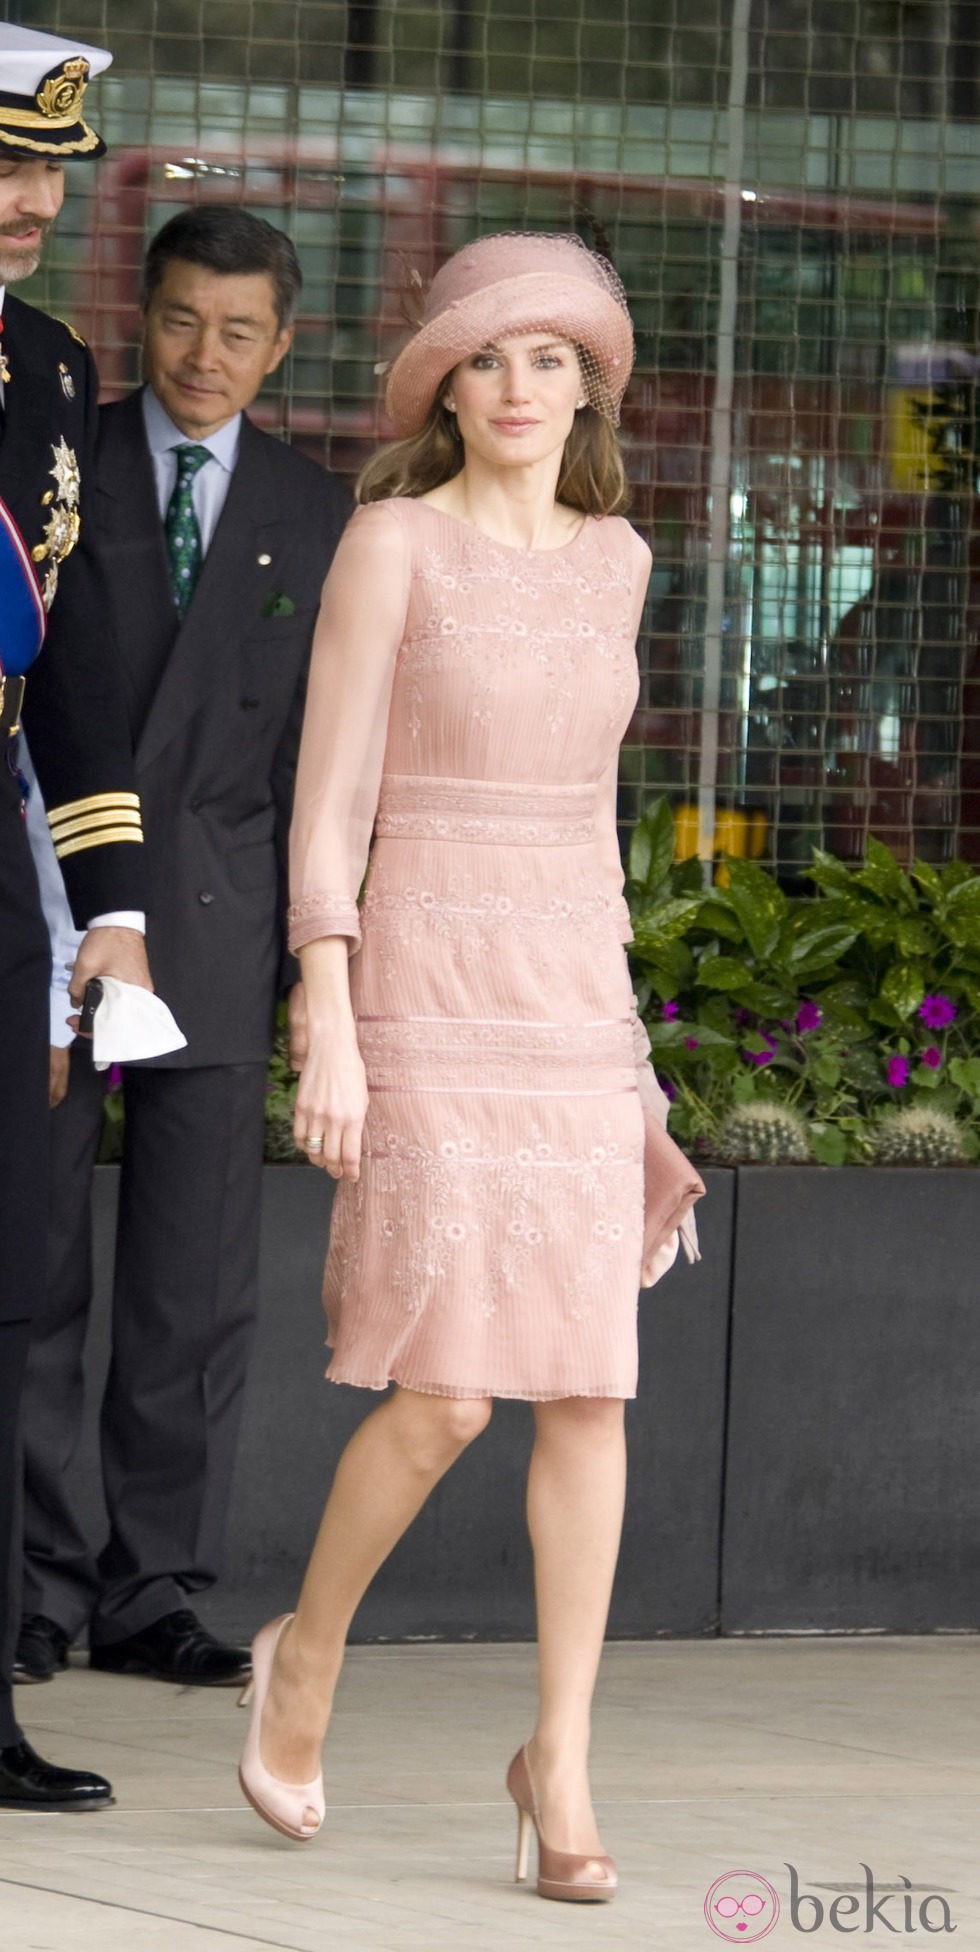 La Princesa Letizia vestida de Felipe Varela en la boda de los Duques de Cambridge